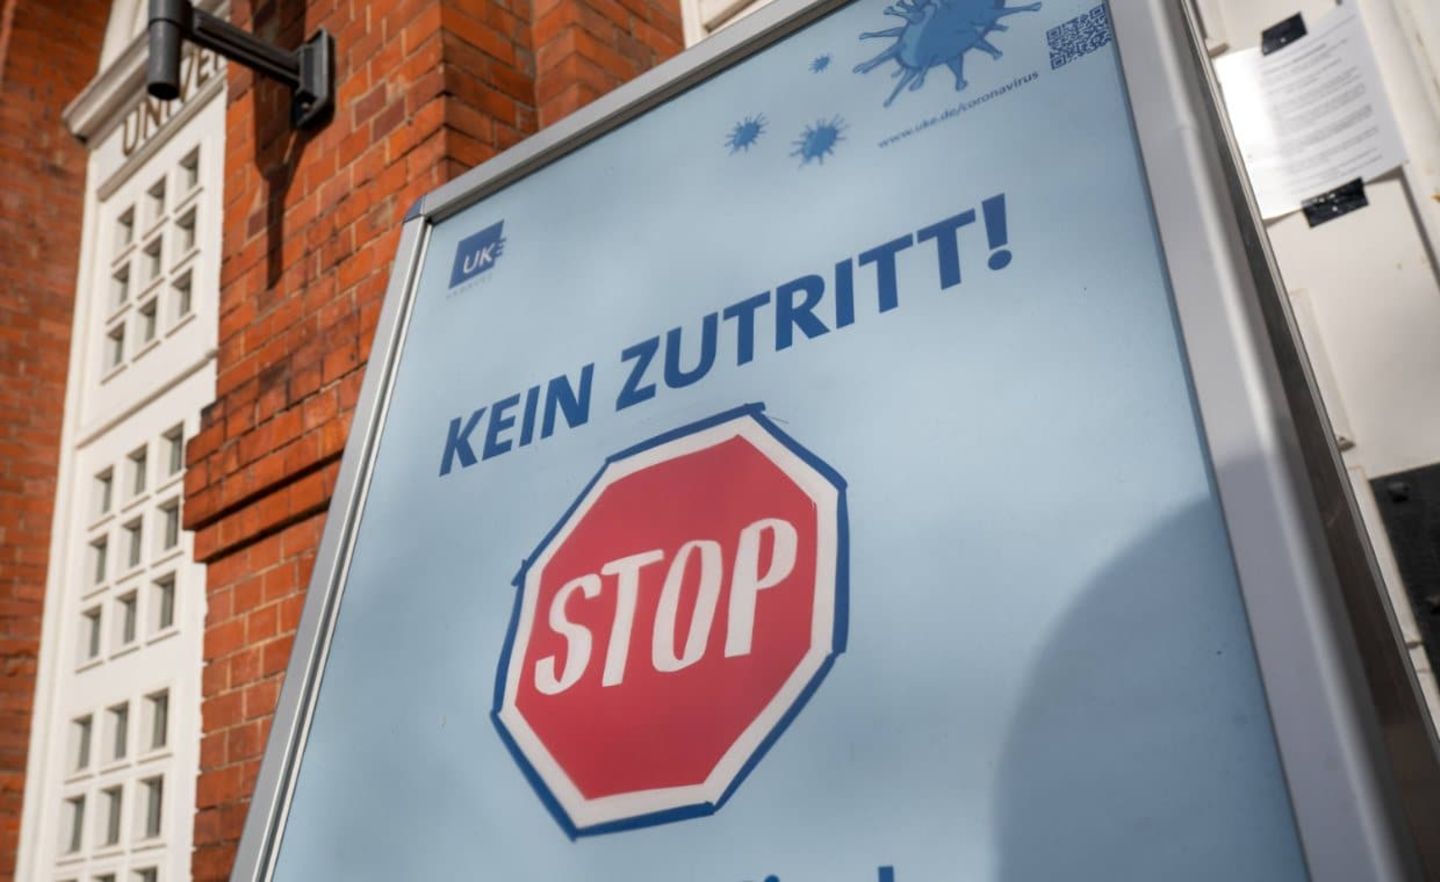 Universitätsklinikum Hamburg-Eppendorf (UKE): Ein Stop-Schild am Haupteingang signalisiert Einlasskontrollen während der Corona-Krise.